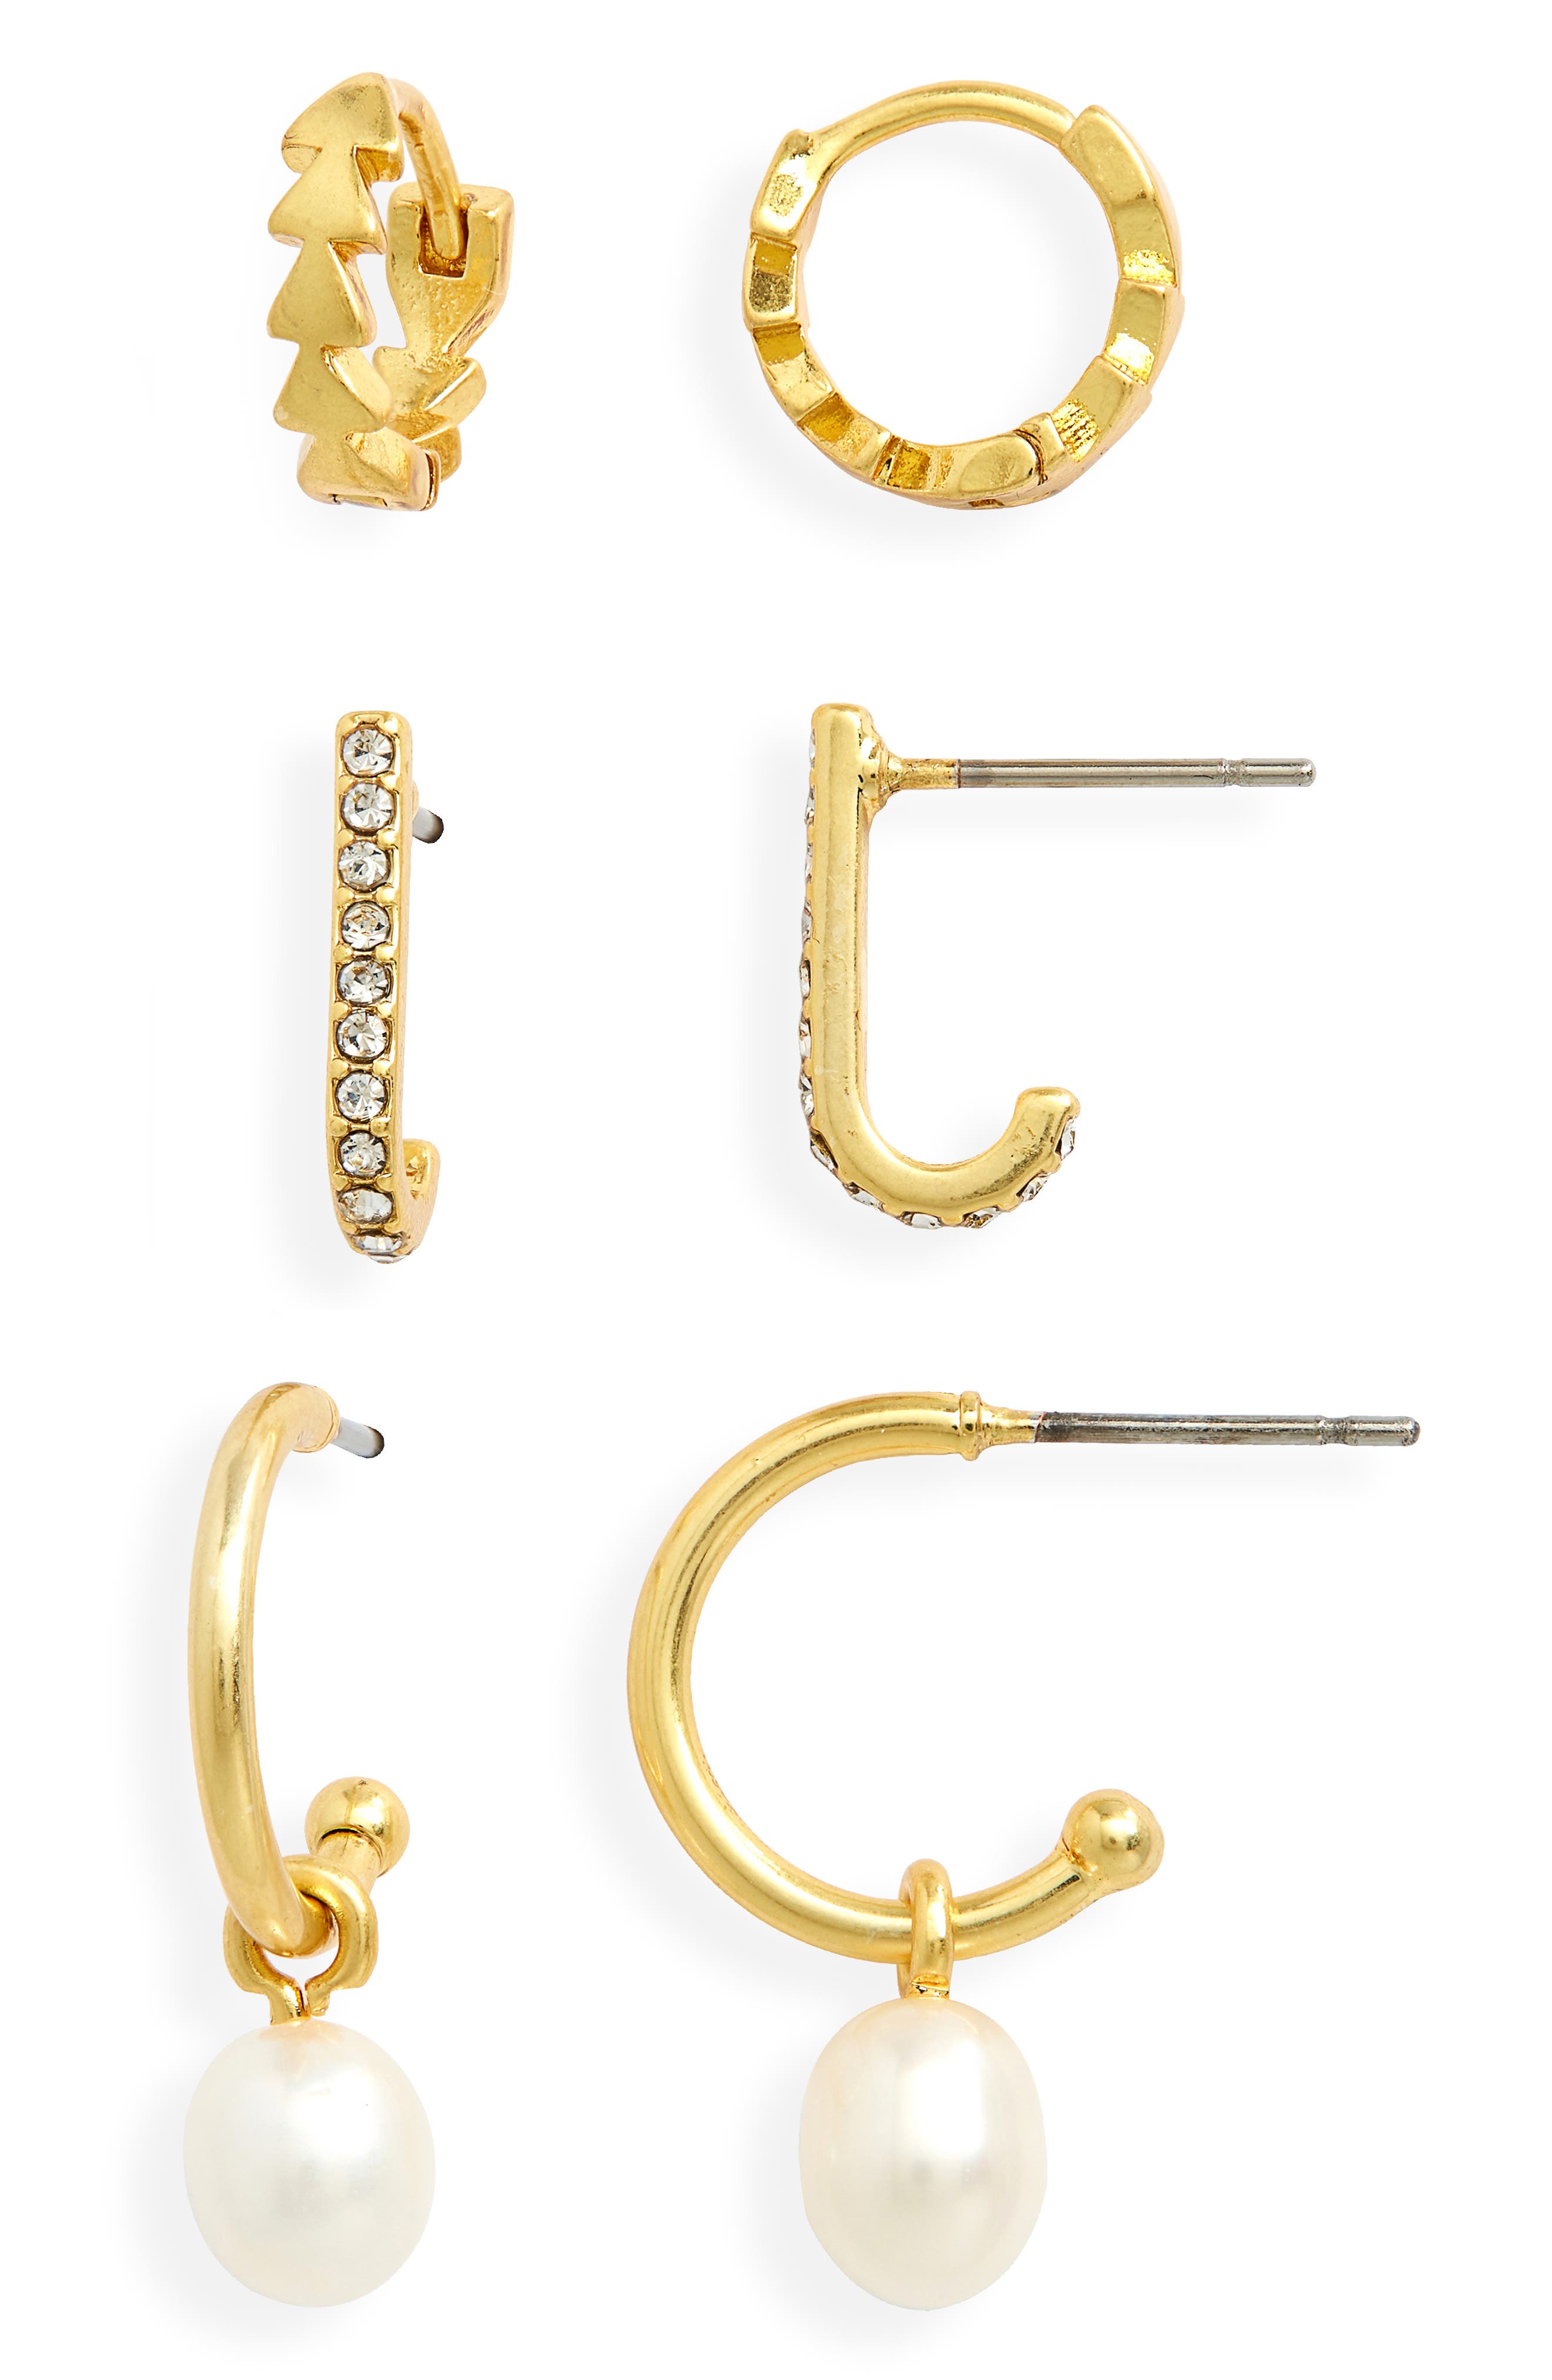 JOYA GIFT Dainty Crystal Pearl Hoop Earring Sets Ball Ear Stud Jewelry Gift For Women Girls 